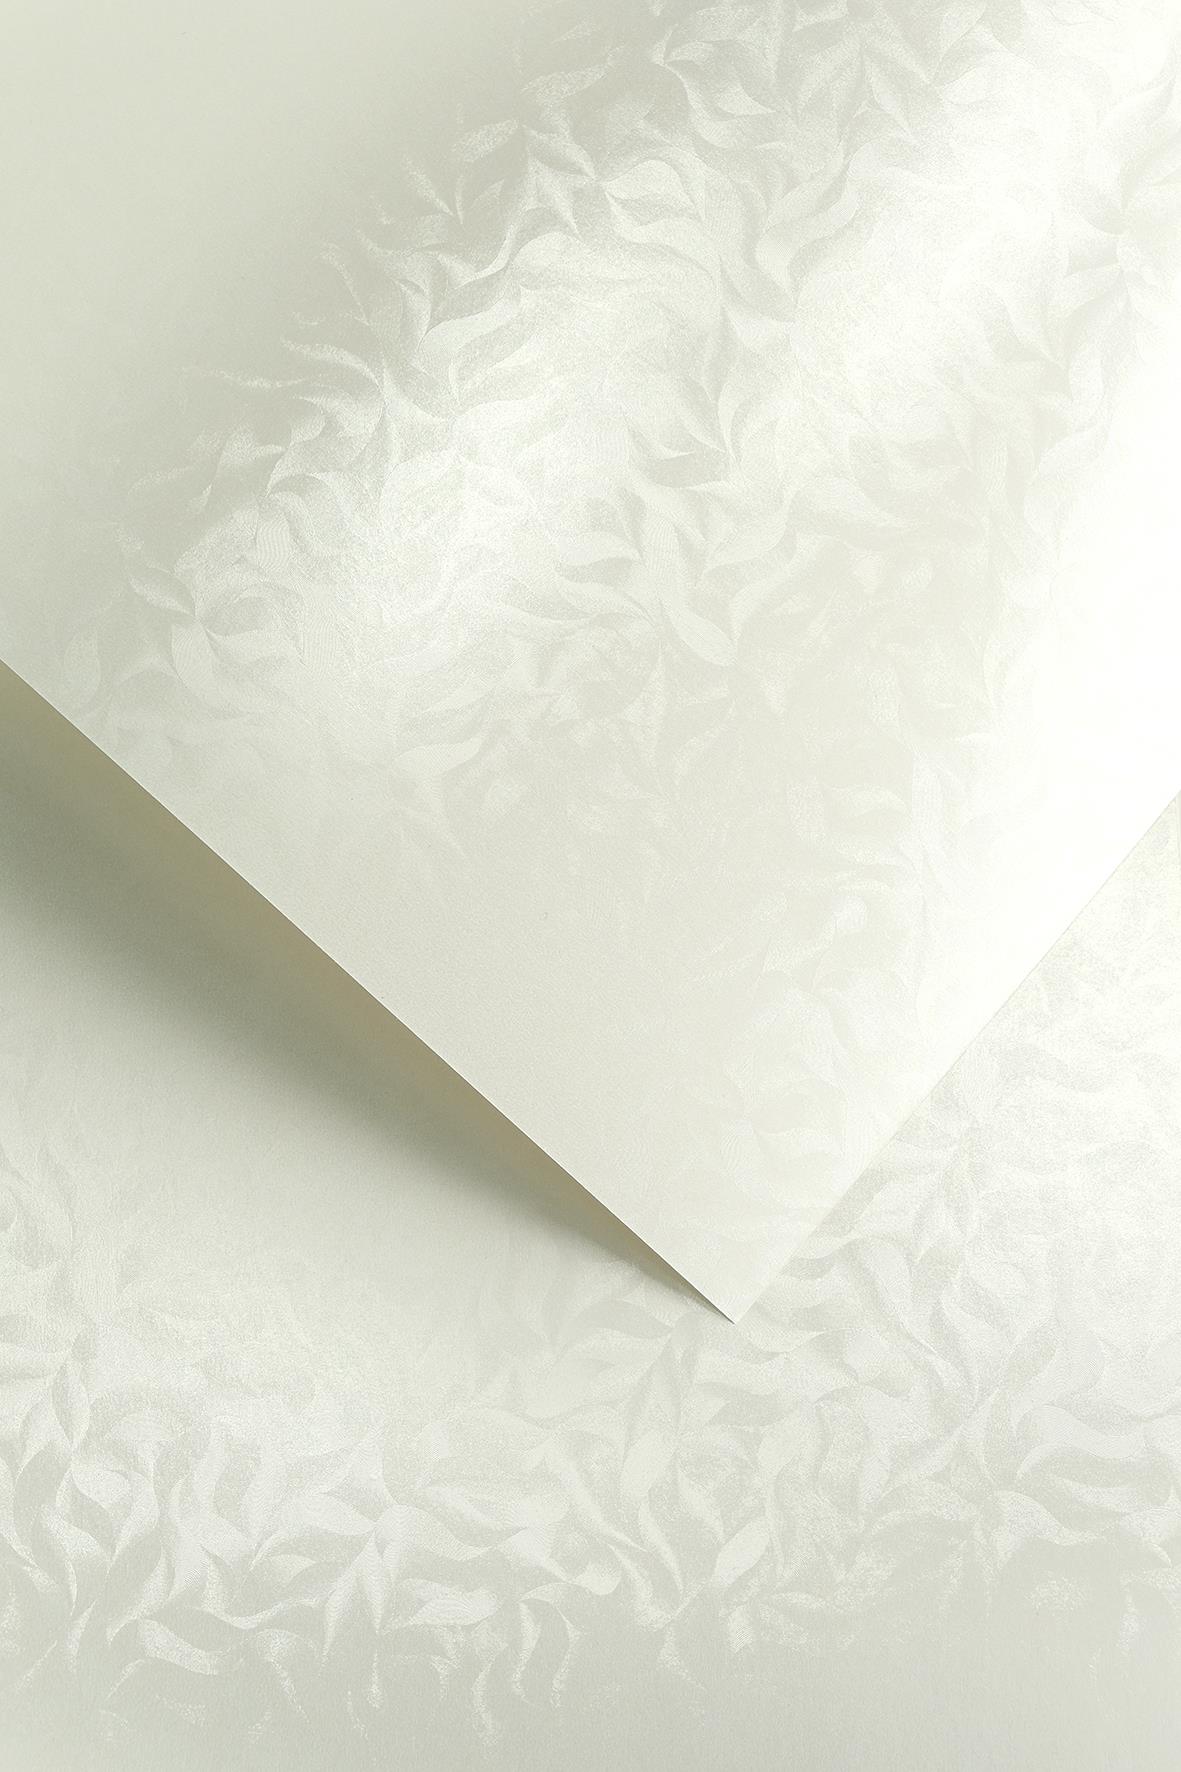 Galeria Papieru ozdobný papír Olympia bílá 220g, 20ks